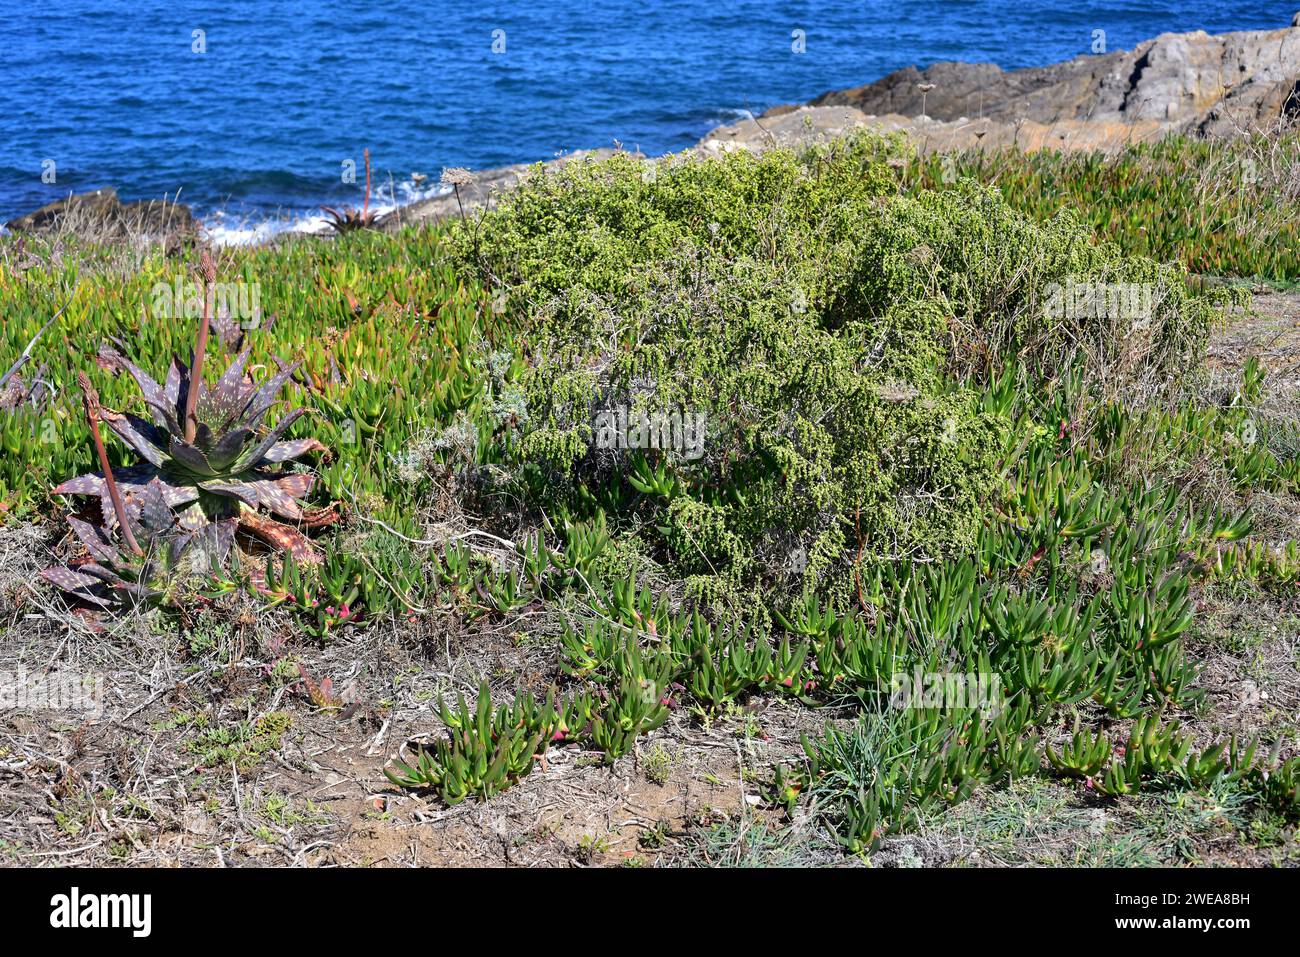 Boalaga (Thymelaea hirsuta) is a perennial shrub native to Mediterranean Basin coasts. Next to Thymelaea are invasive plants as Mesembryanthemum eduli Stock Photo